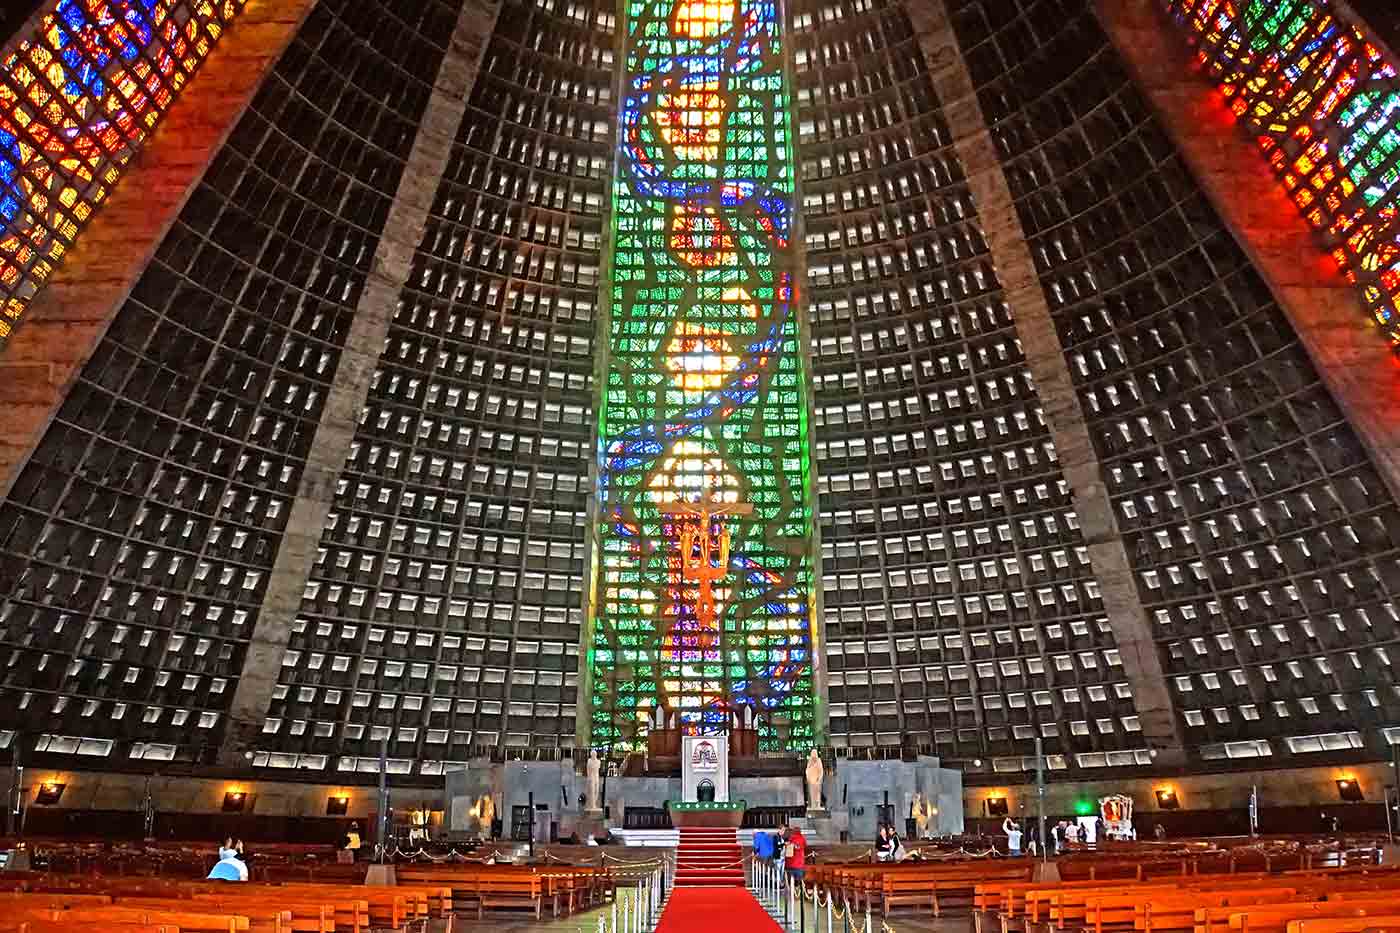 Rio de Janeiro Cathedral